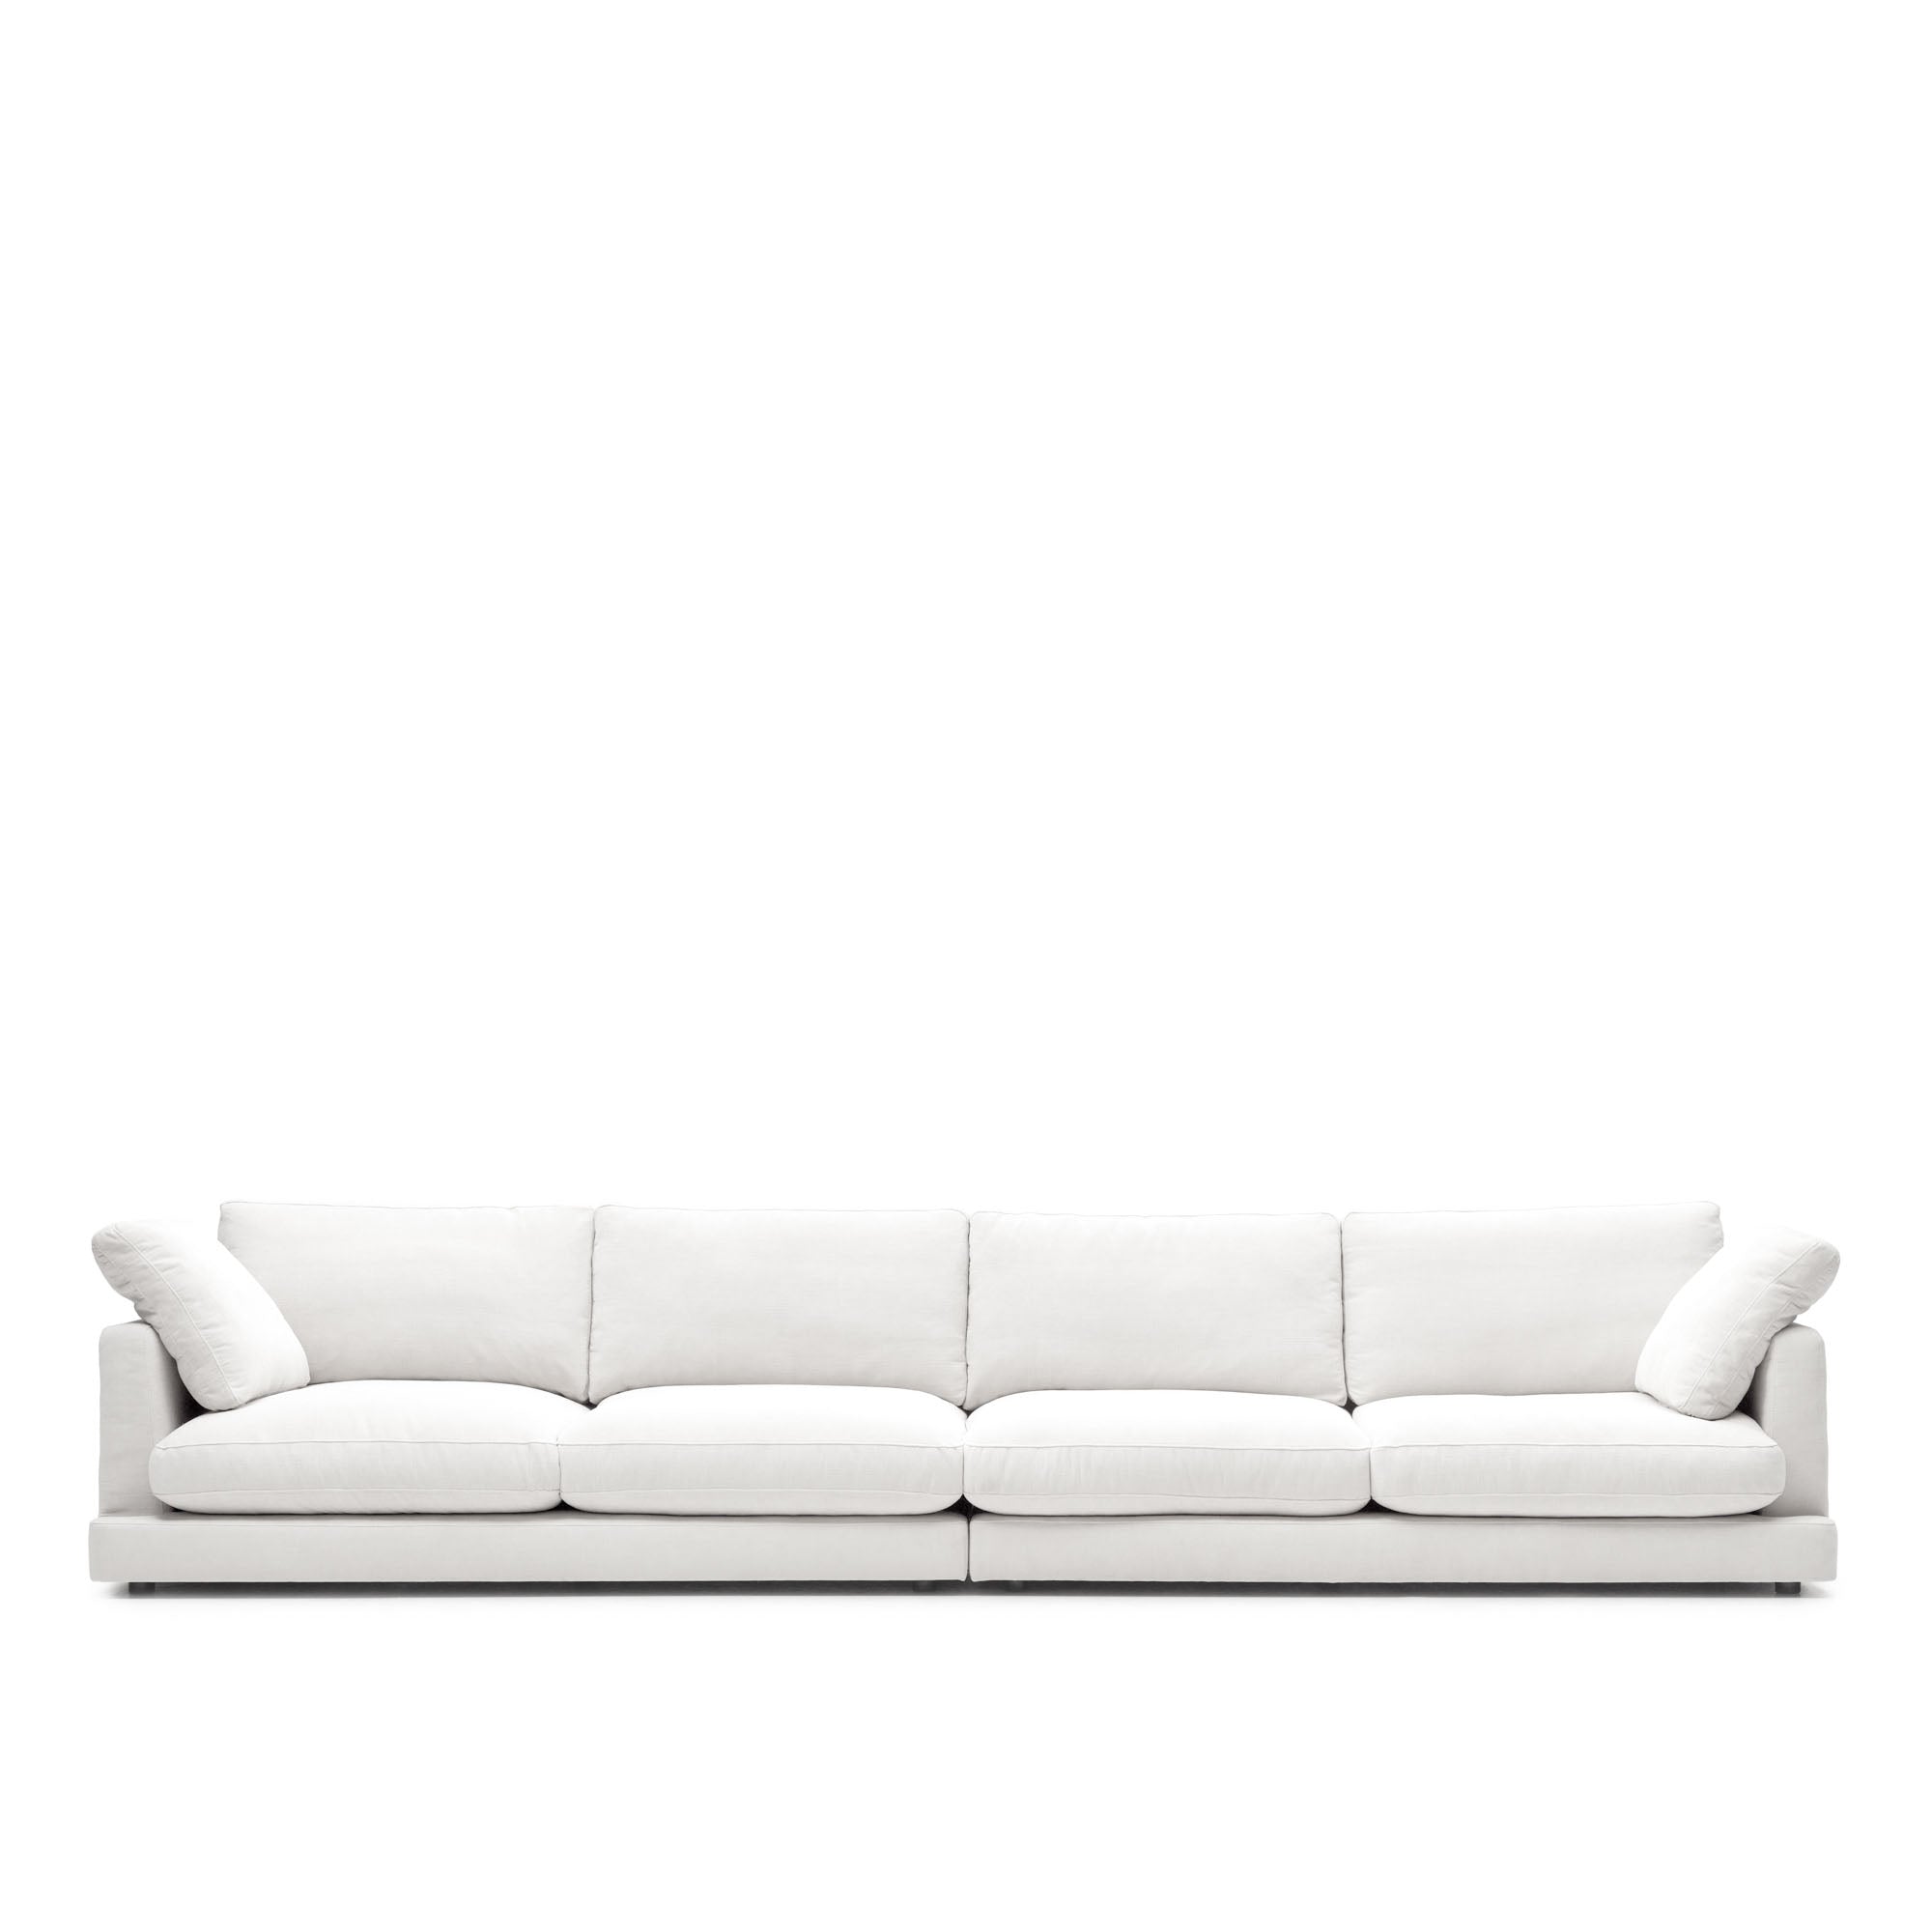 Gala 6 személyes kanapé fehér színben, 390 cm